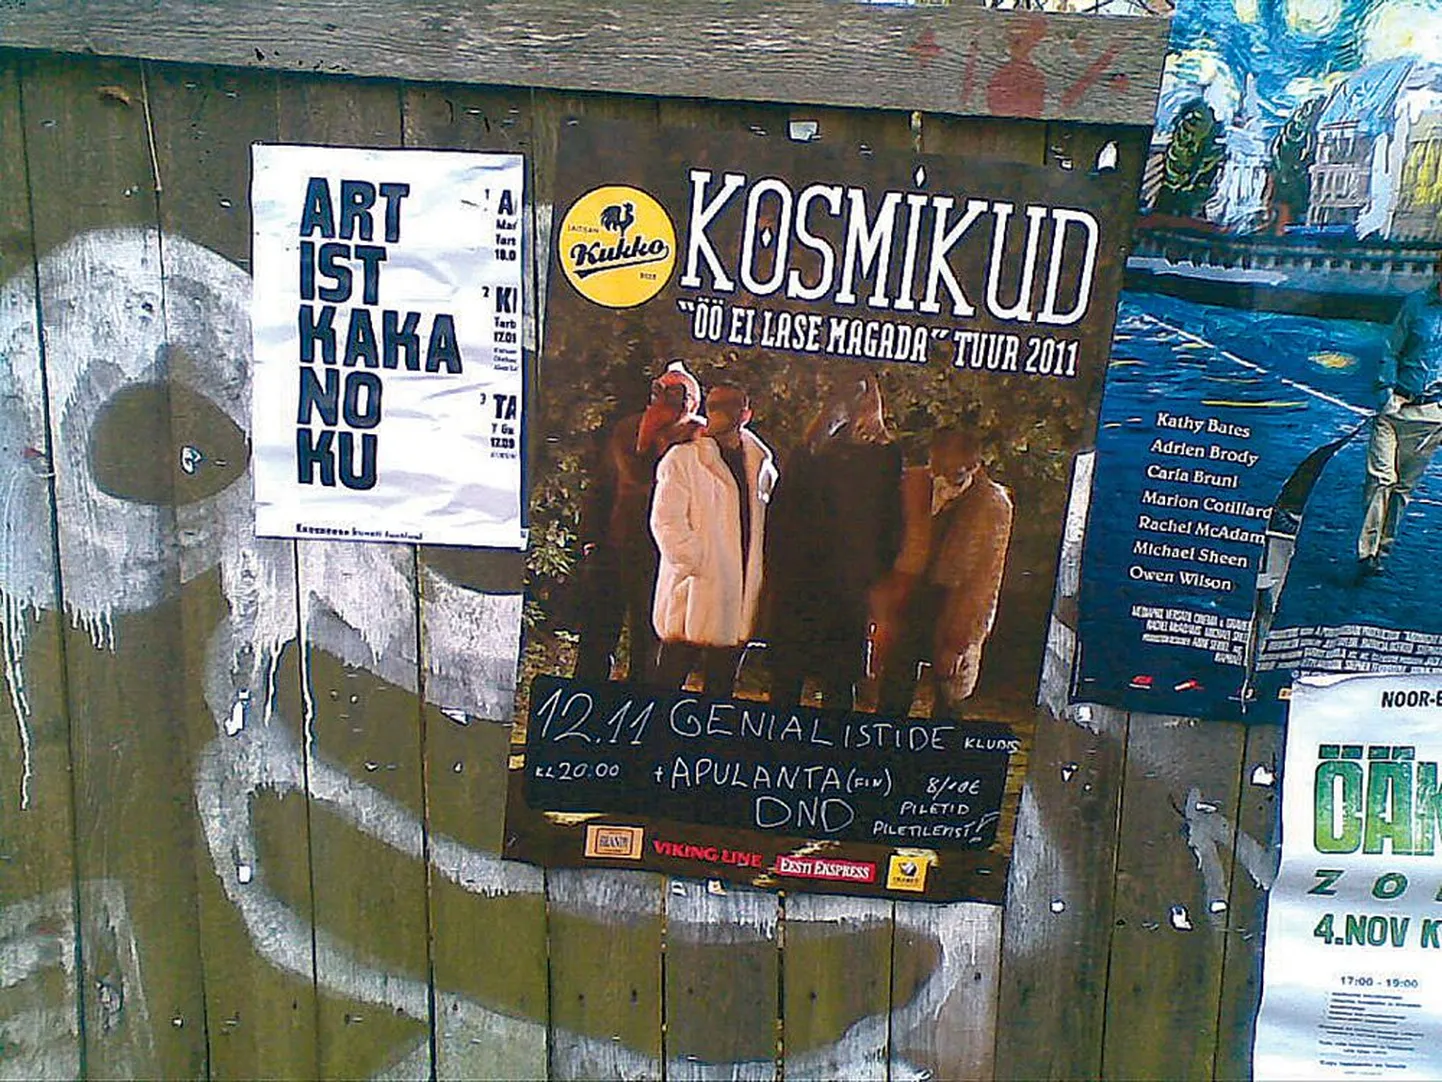 Tundmatu plakatimeister on parodeerinud
festivali ART IST KUKU NU UT plakatit.